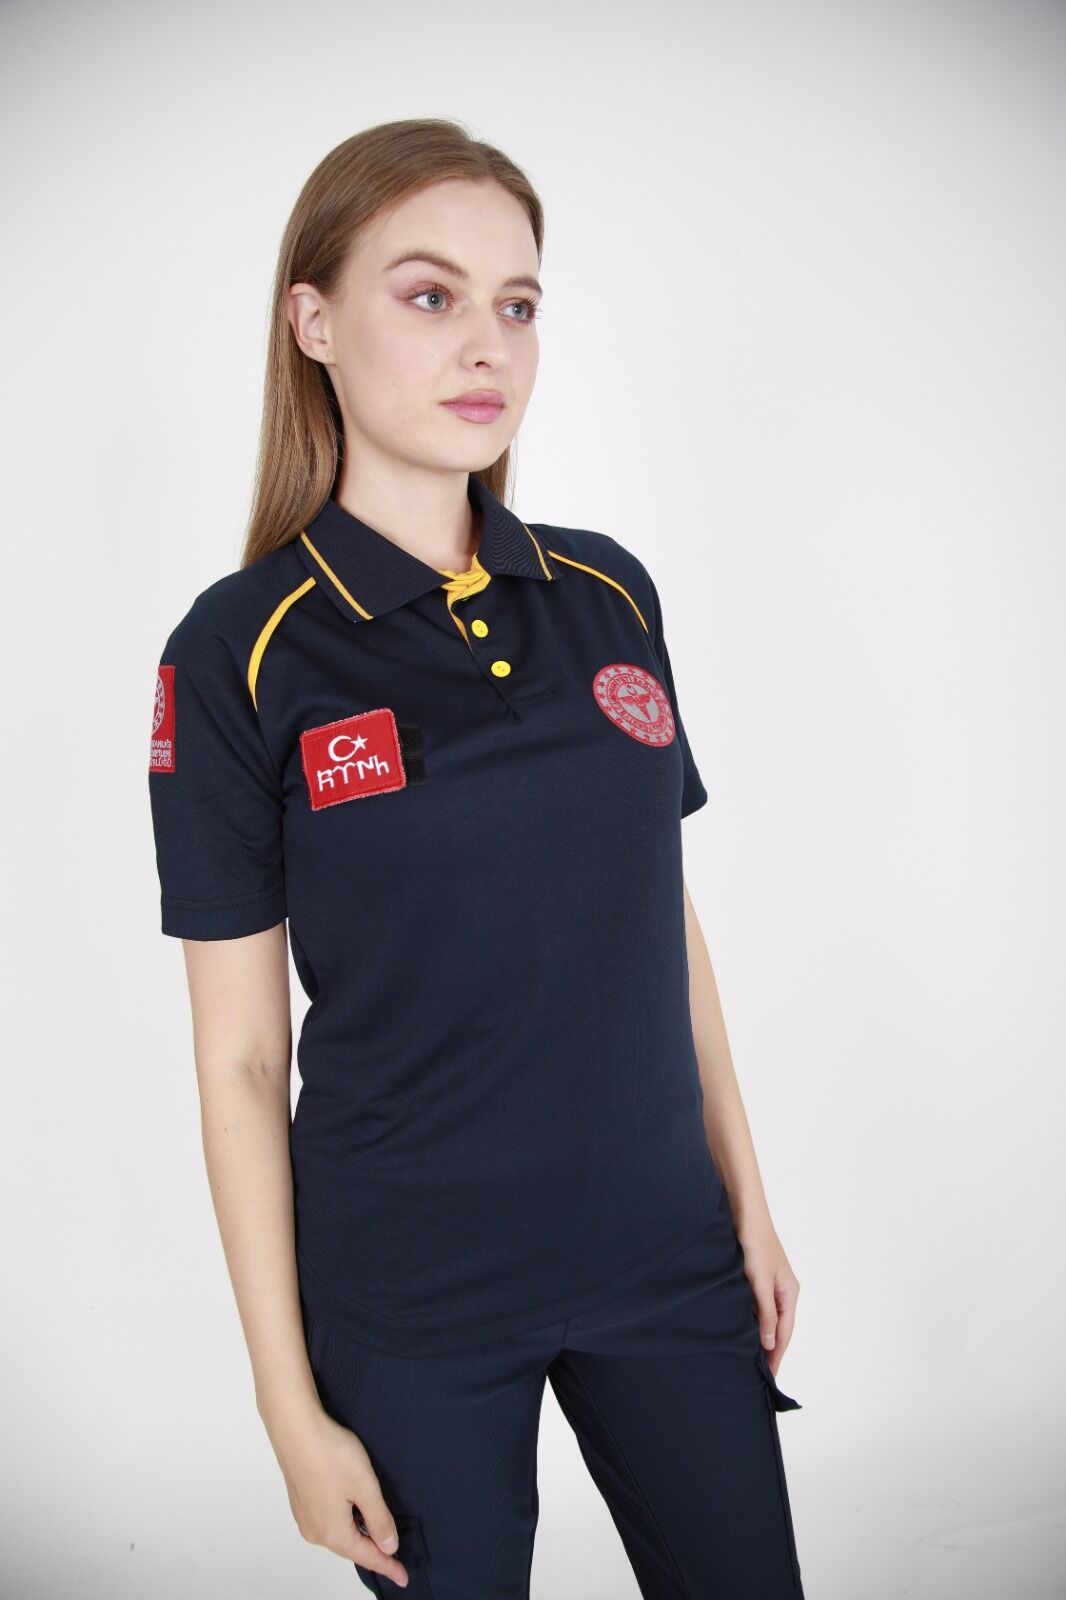 Yeni 112 Acil Sağlık Comfort Polo Yaka T-shirt(Unisex-Fileli)